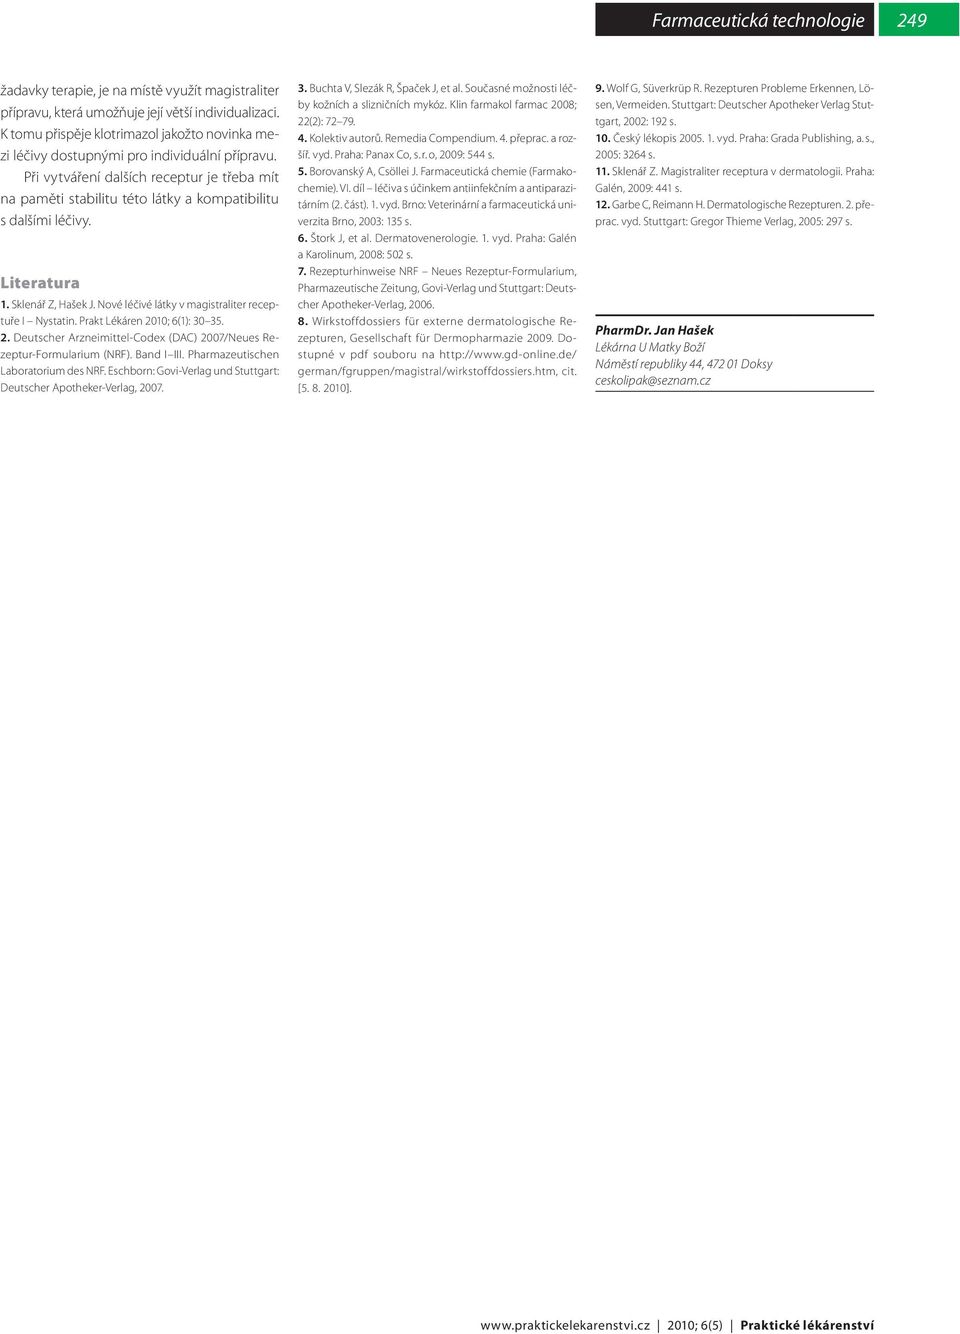 Prakt Lékáren 2010; 6(1): 30 35. 2. Deutscher Arzneimittel-Codex (DAC) 2007/Neues Rezeptur-Formularium (NRF). Band I III. Pharmazeutischen Laboratorium des NRF.